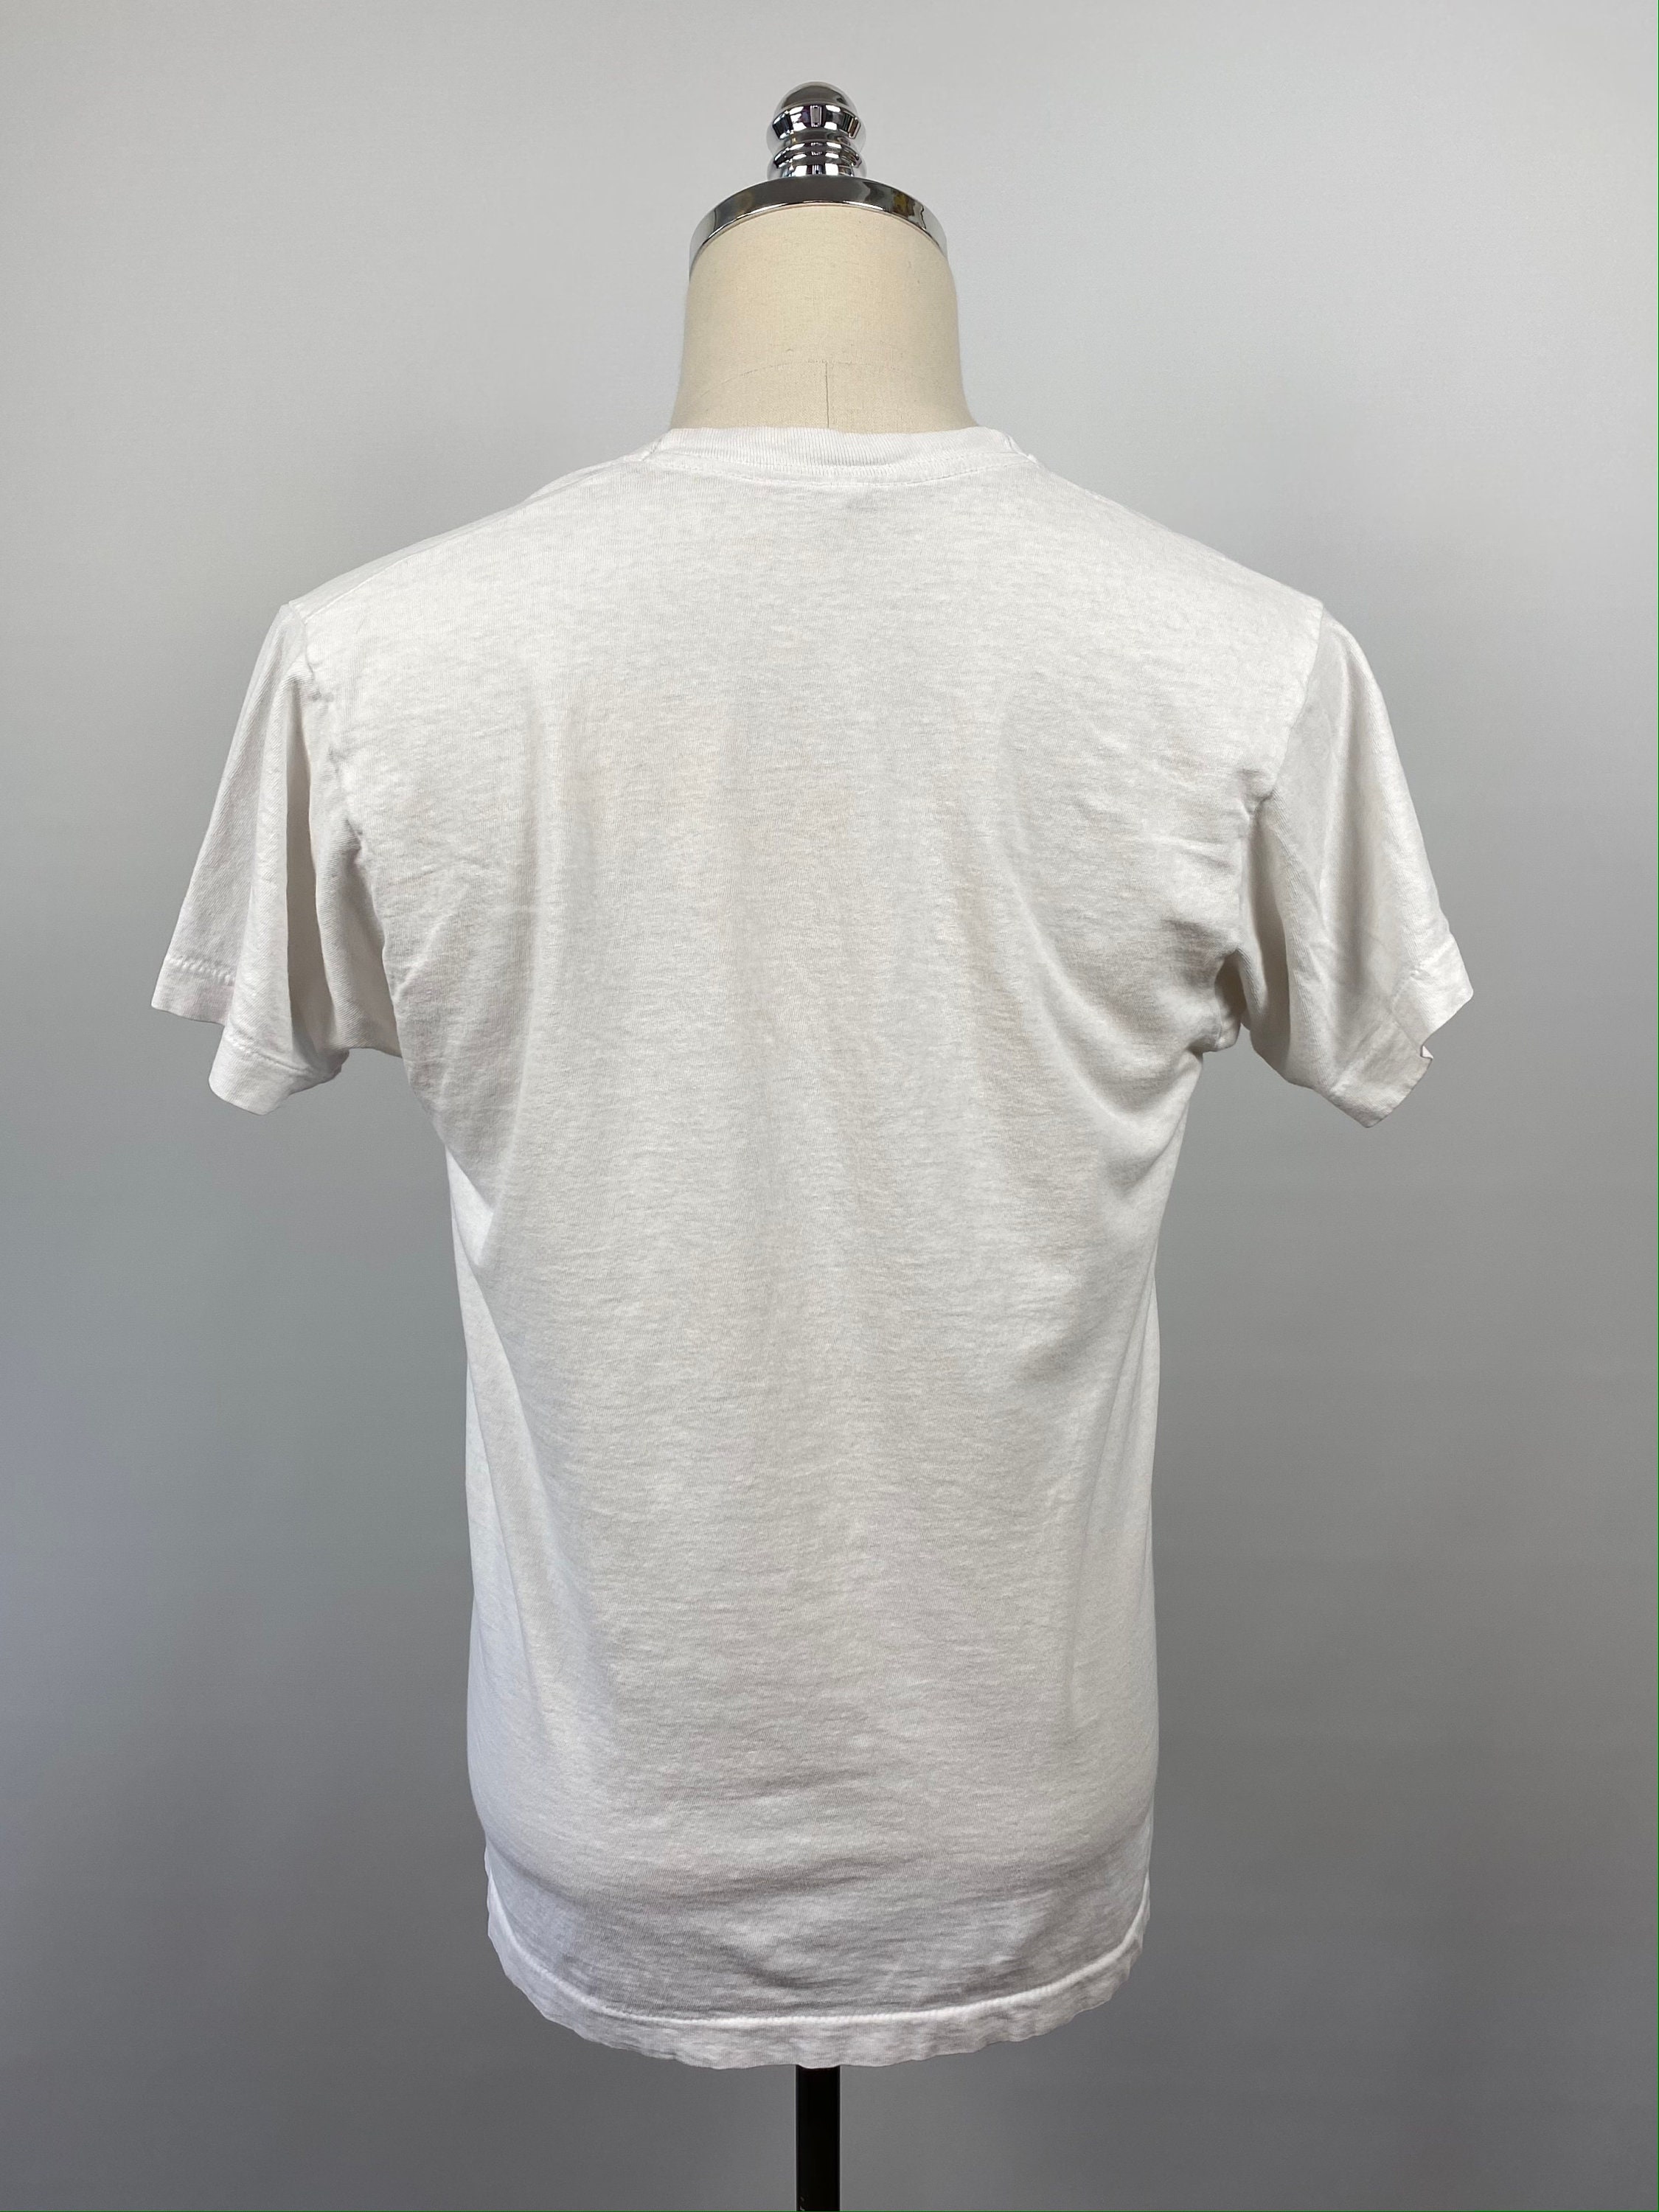 Vintage 70s Blank White V-neck T shirt L | Etsy